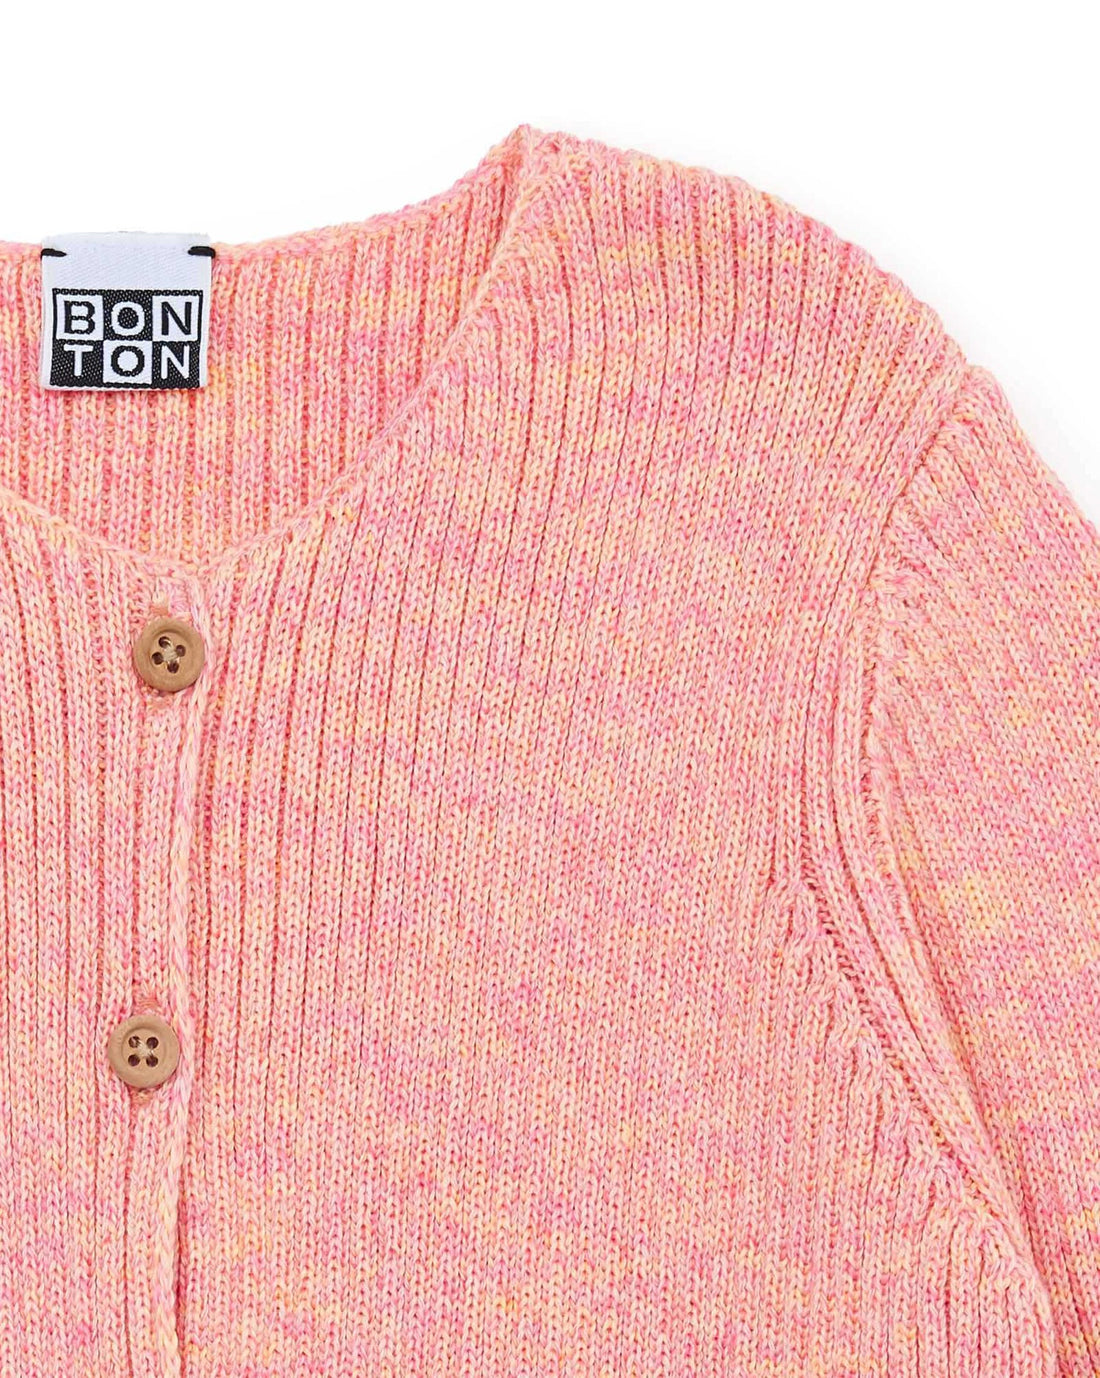 Bonton - rib cardigan - pink